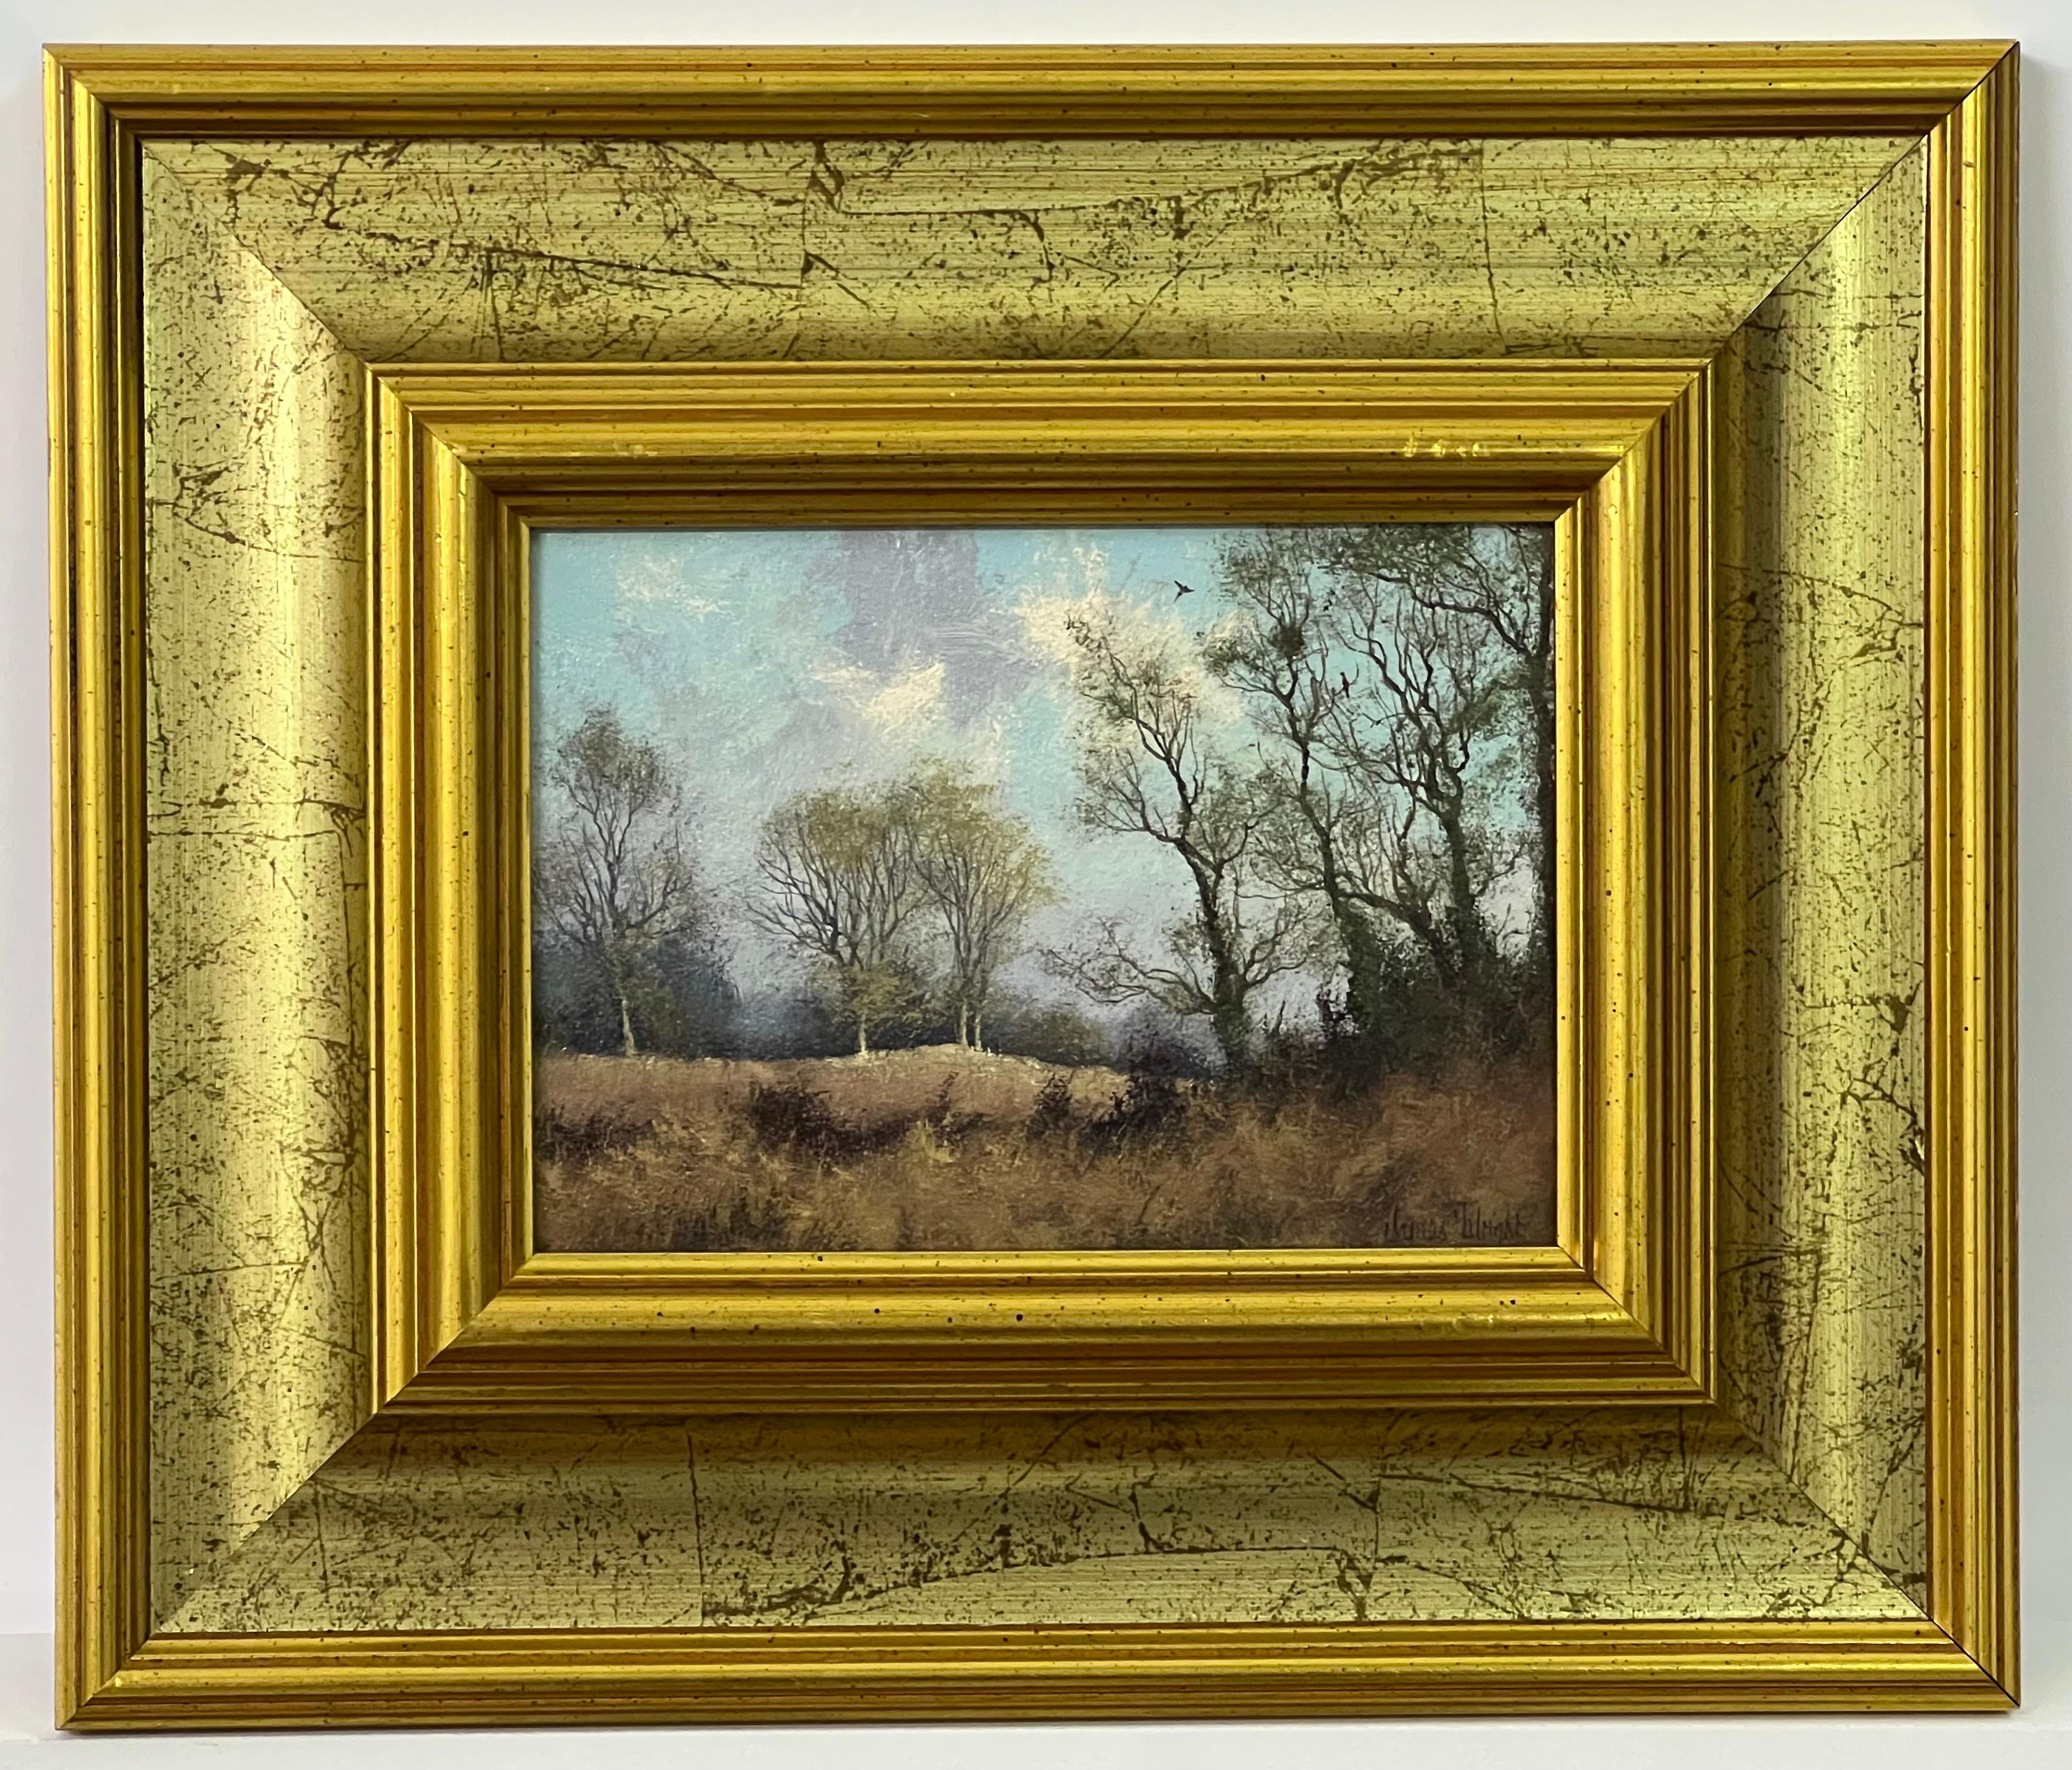 Landschaft Ölgemälde von Bäumen in der englischen Landschaft von 20. Jahrhundert Künstler Landschaft von 20. Jahrhundert britischen Künstler, James Wright 
Signiert, Original, Öl auf Leinwand, in einem schönen verschnörkelten Goldrahmen